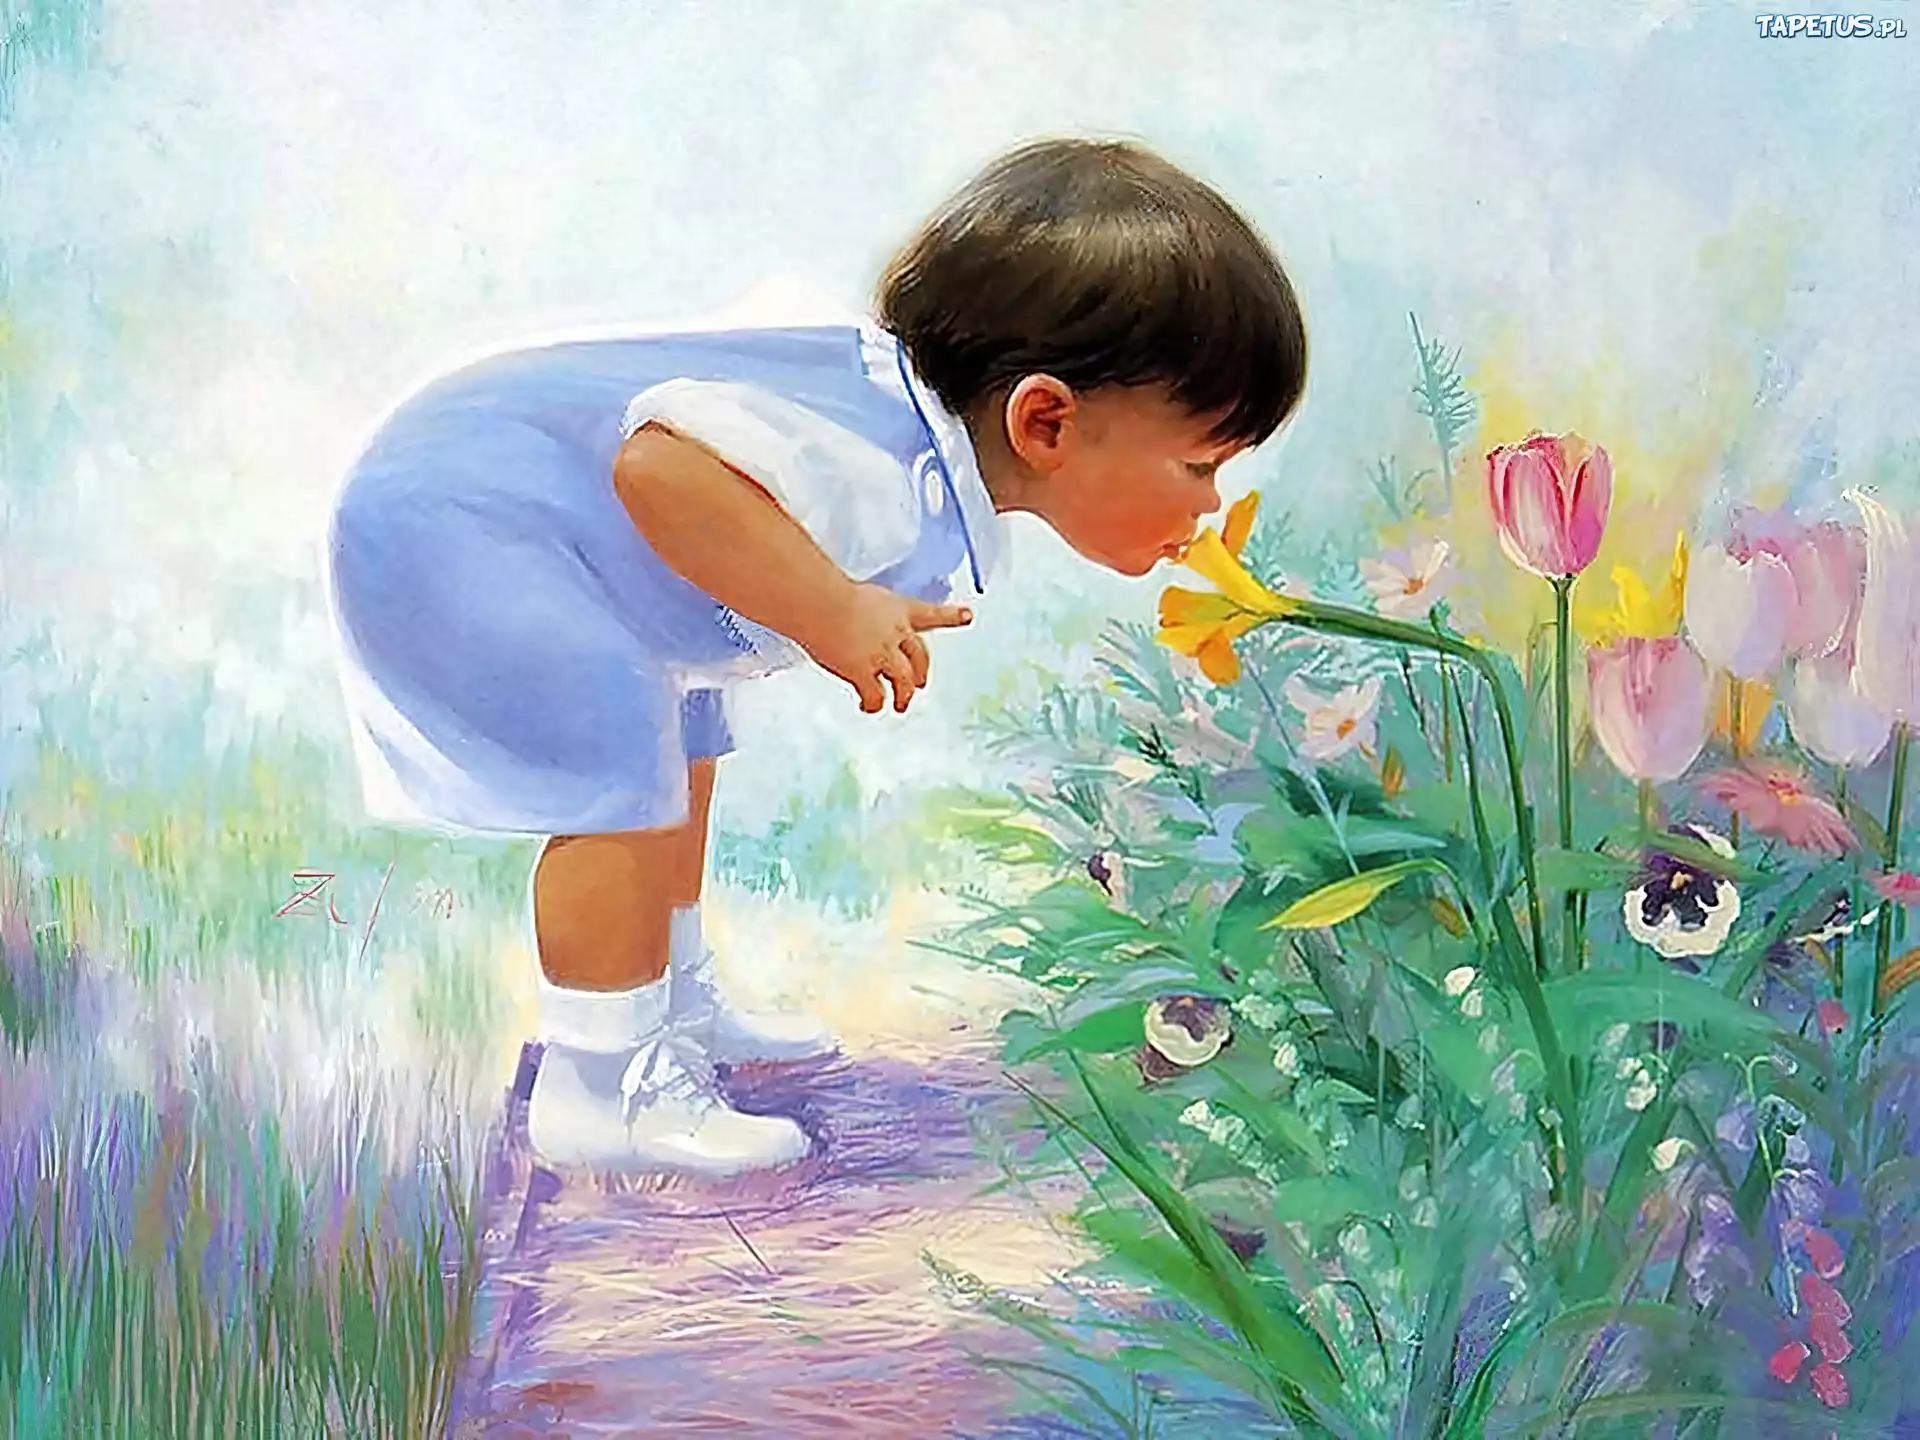 Трогательно прекрасно. Картины Дональда Золана беззаботное детство.